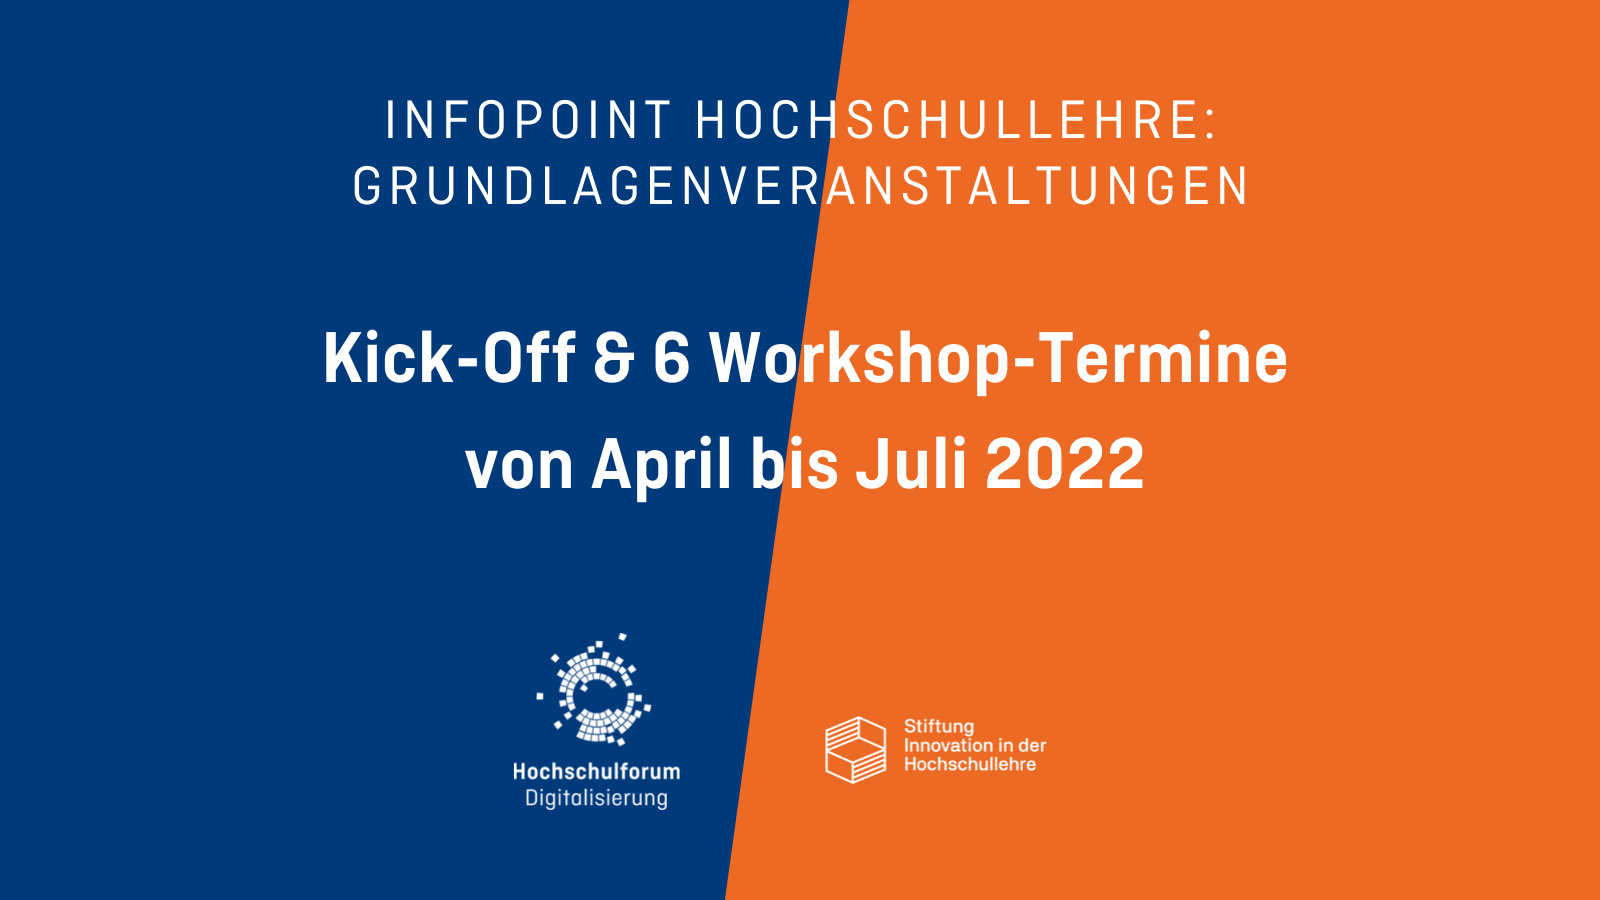 Hintergrund: Halb blaue und halb orange Farbfläche. Text: Infopoint Hochschullehre: Grundlagenveranstaltungen. Kick-Off & Workshop-Termine von April bis Juli 2022.